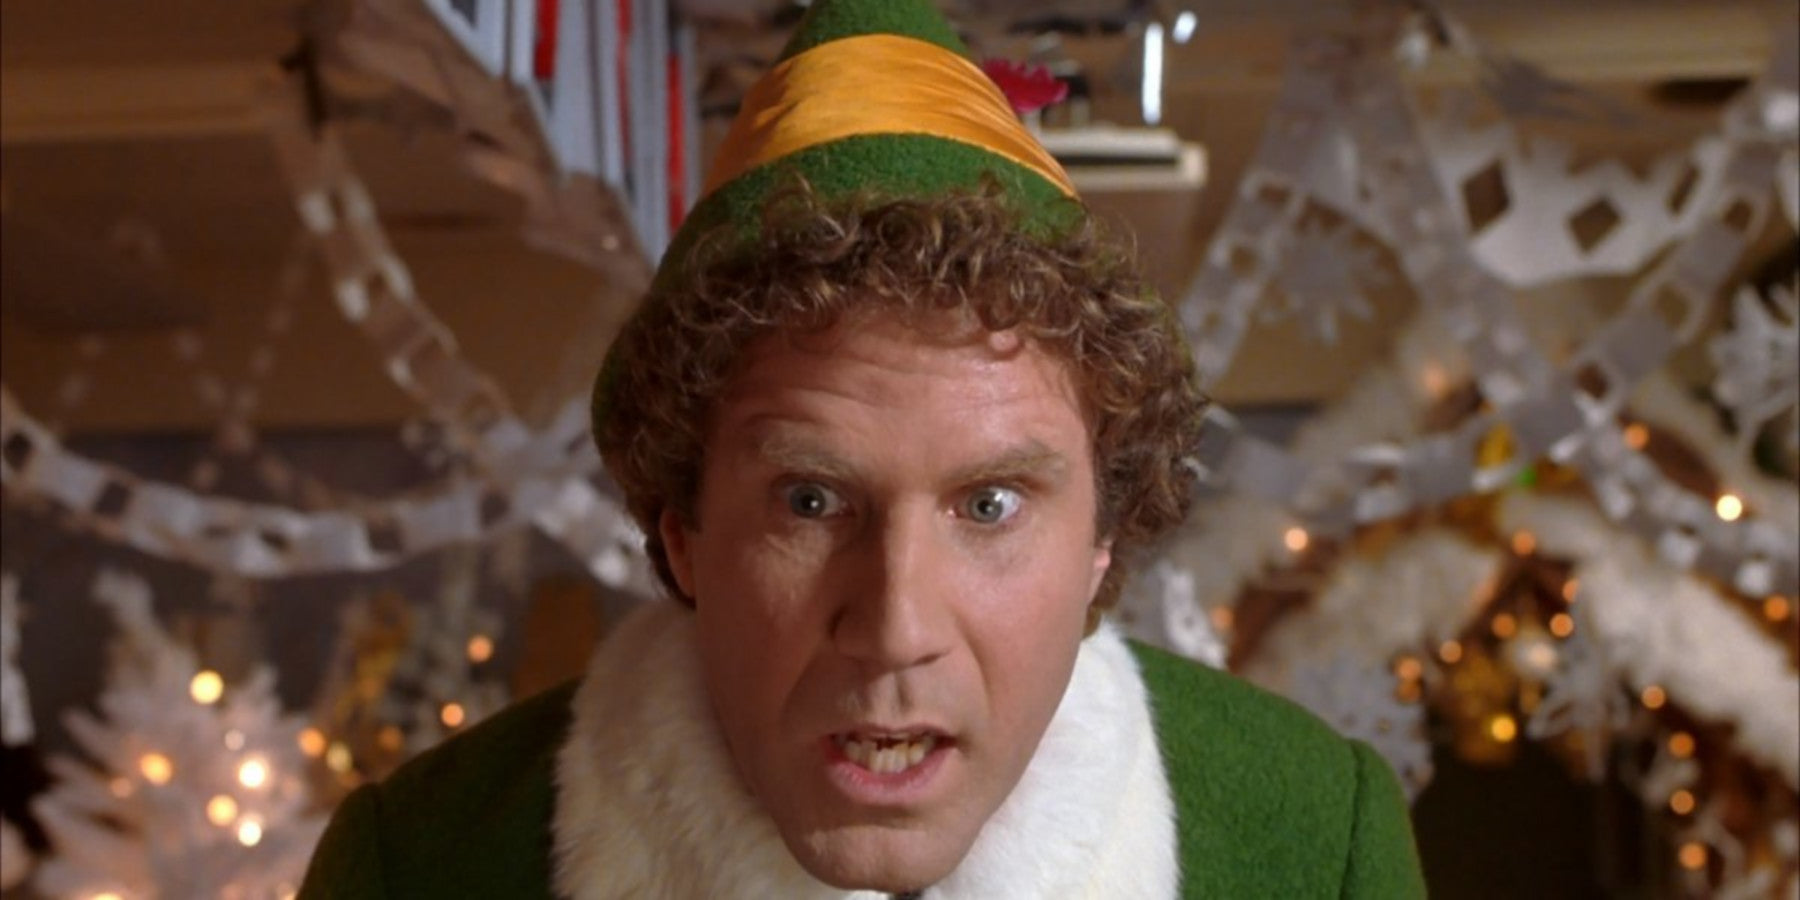 Elf Christmas movie